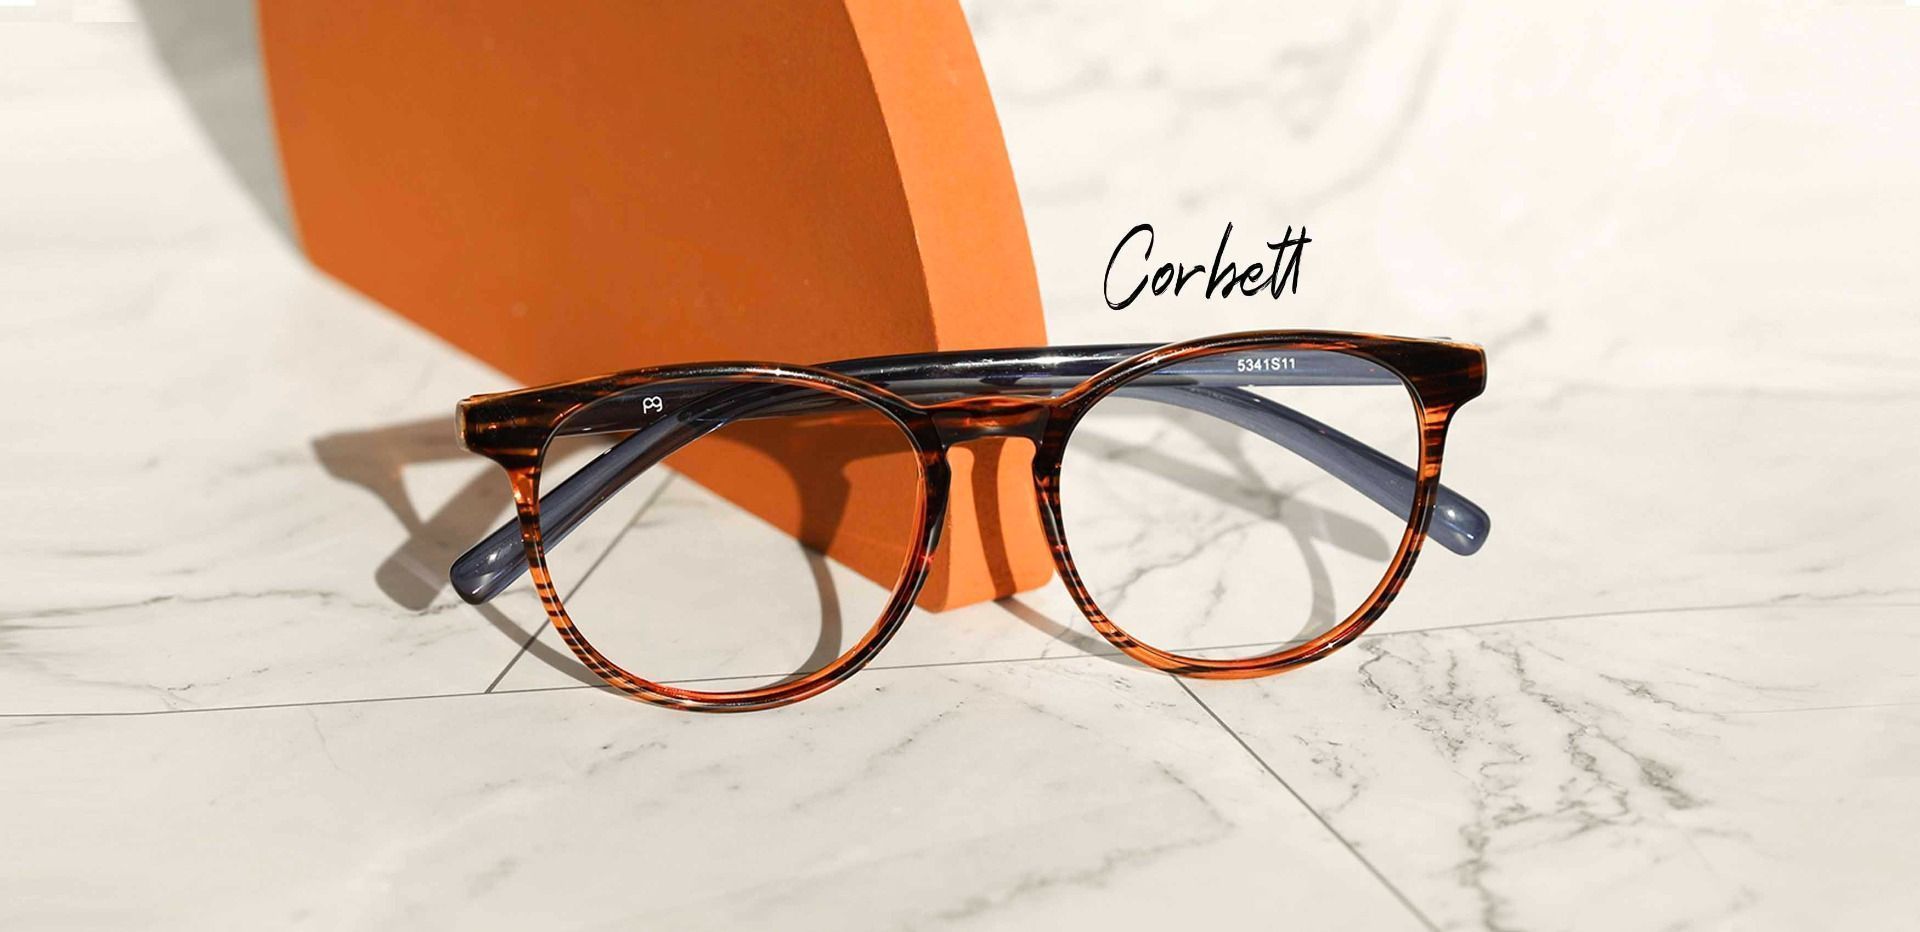 Corbett Oval Prescription Glasses - Striped